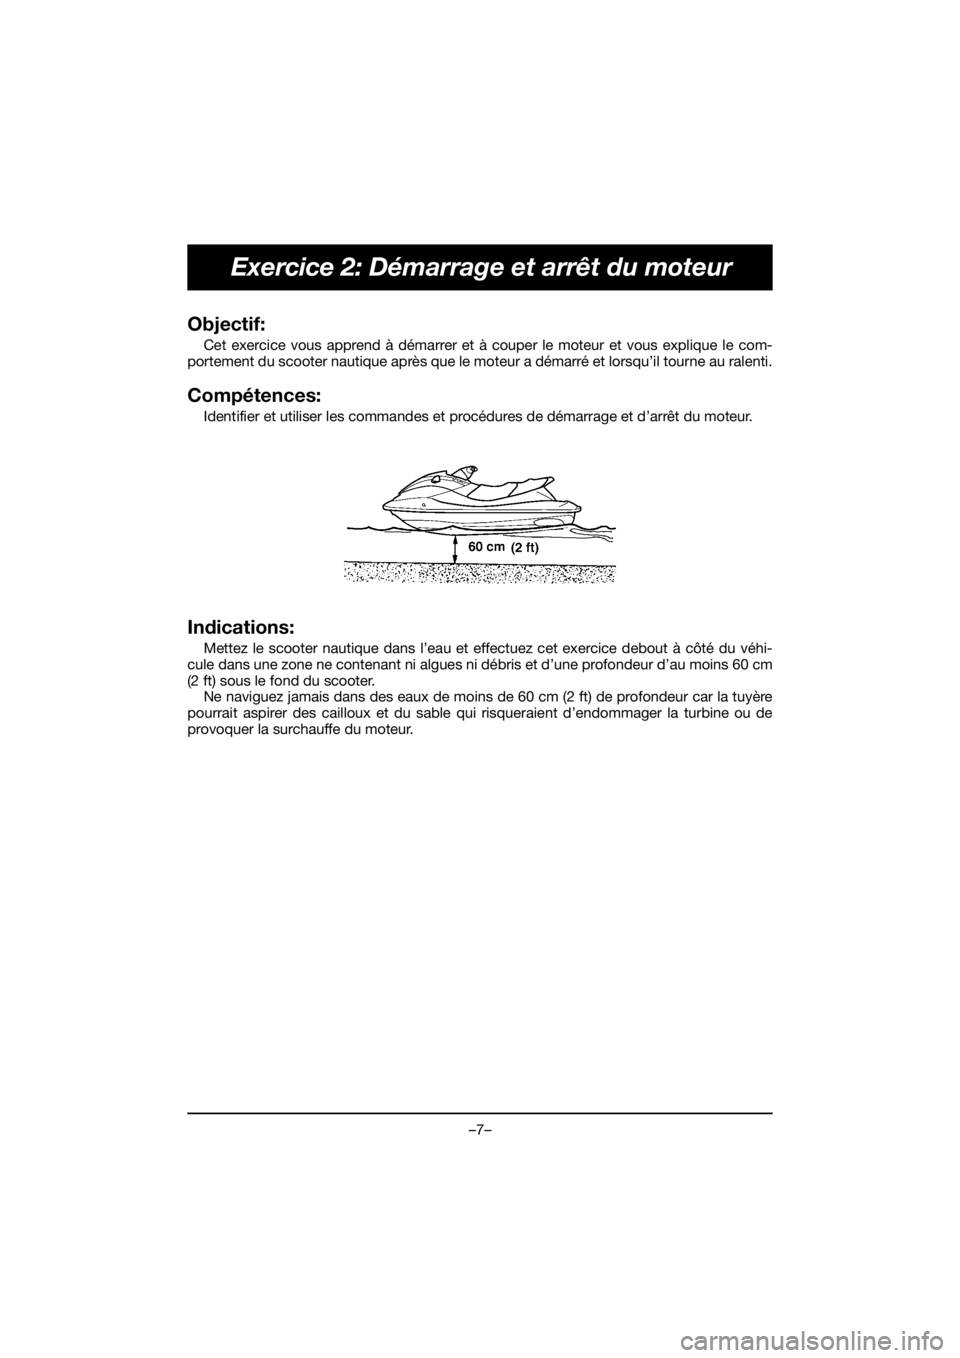 YAMAHA EX 2020  Manual de utilização (in Portuguese) –7–
Exercice 2: Démarrage et arrêt du moteur
Objectif: 
Cet exercice vous apprend à démarrer et à couper le moteur et vous explique le com-
portement du scooter nautique après que le moteur 